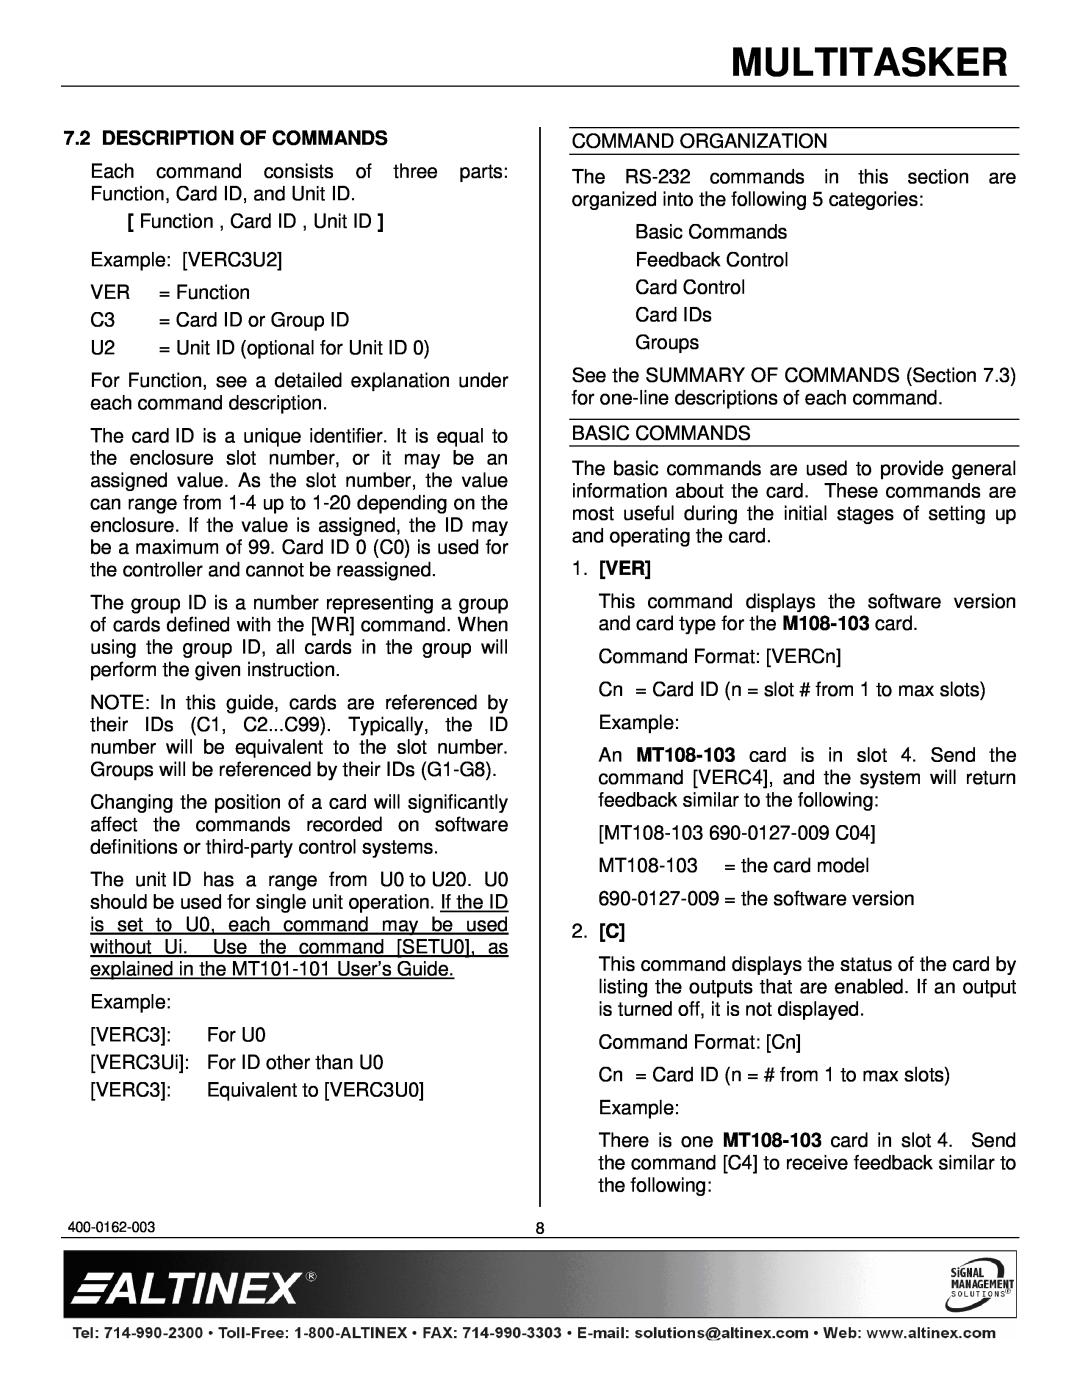 Altinex MT108-103 manual Multitasker, Description Of Commands, 1.VER 